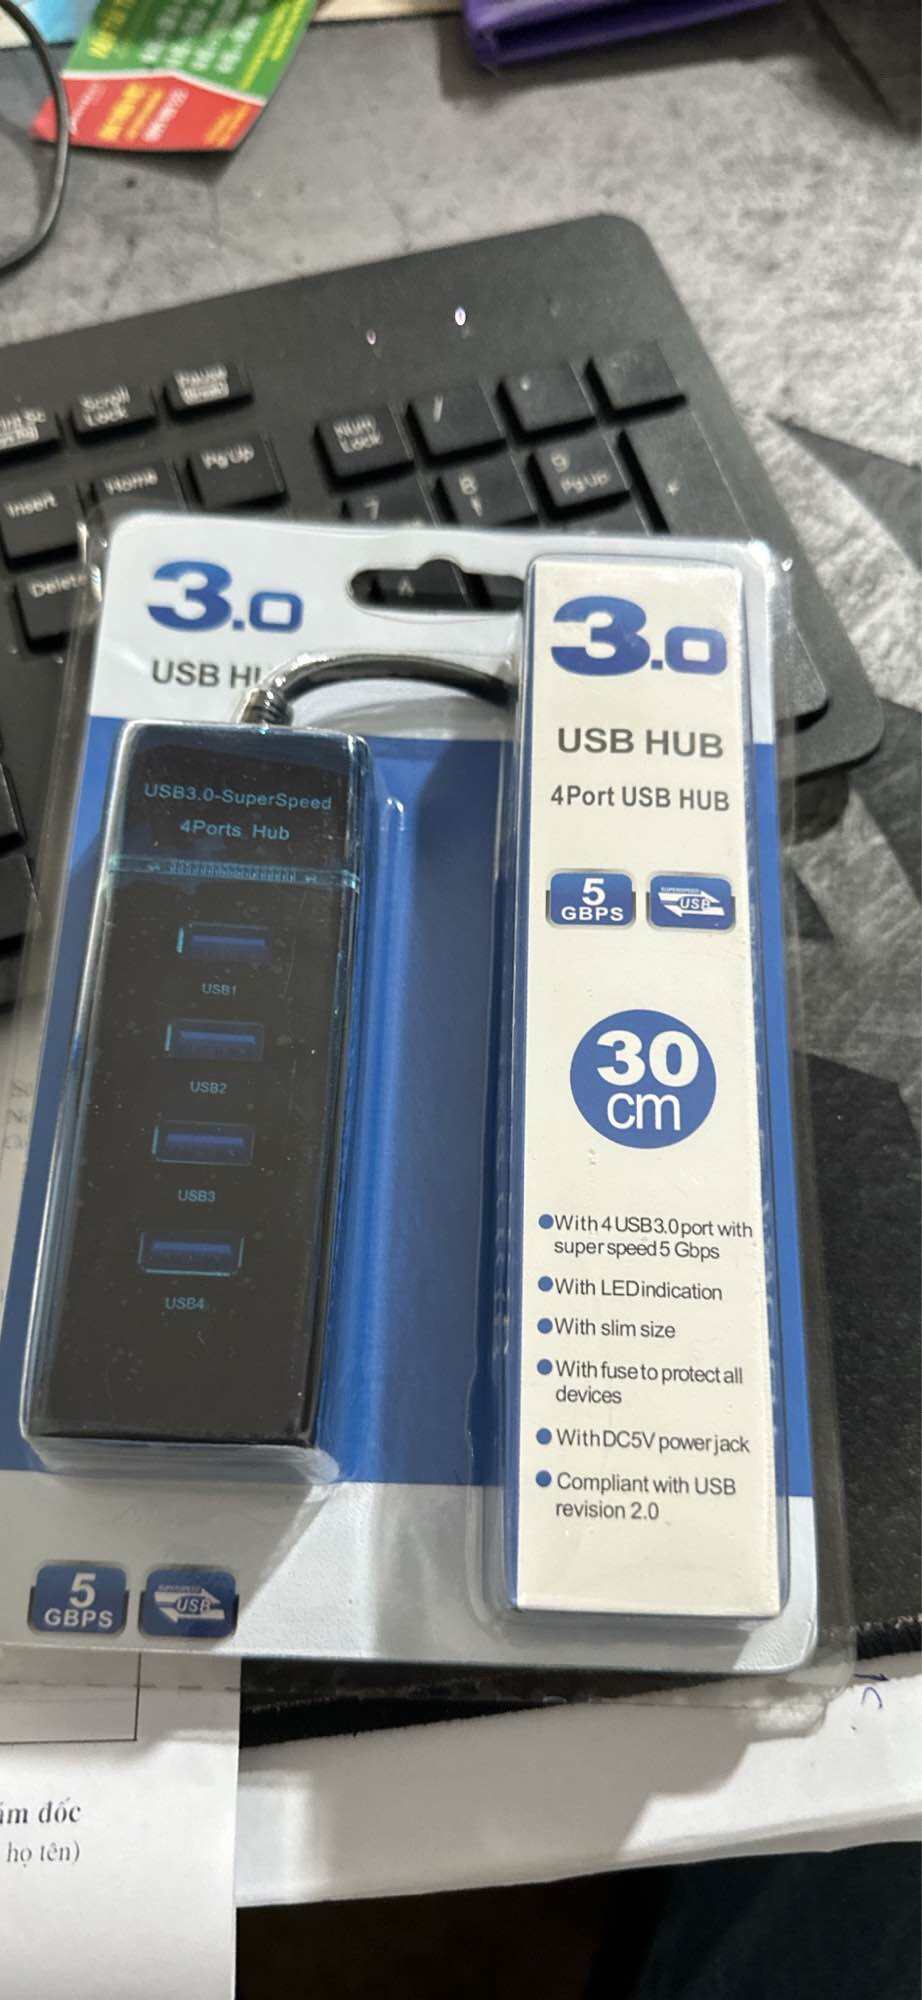 Bộ chia USB ra 4 cổng,Hup 3.0 4 cổng. Truyền dữ liệu tốc độ cao